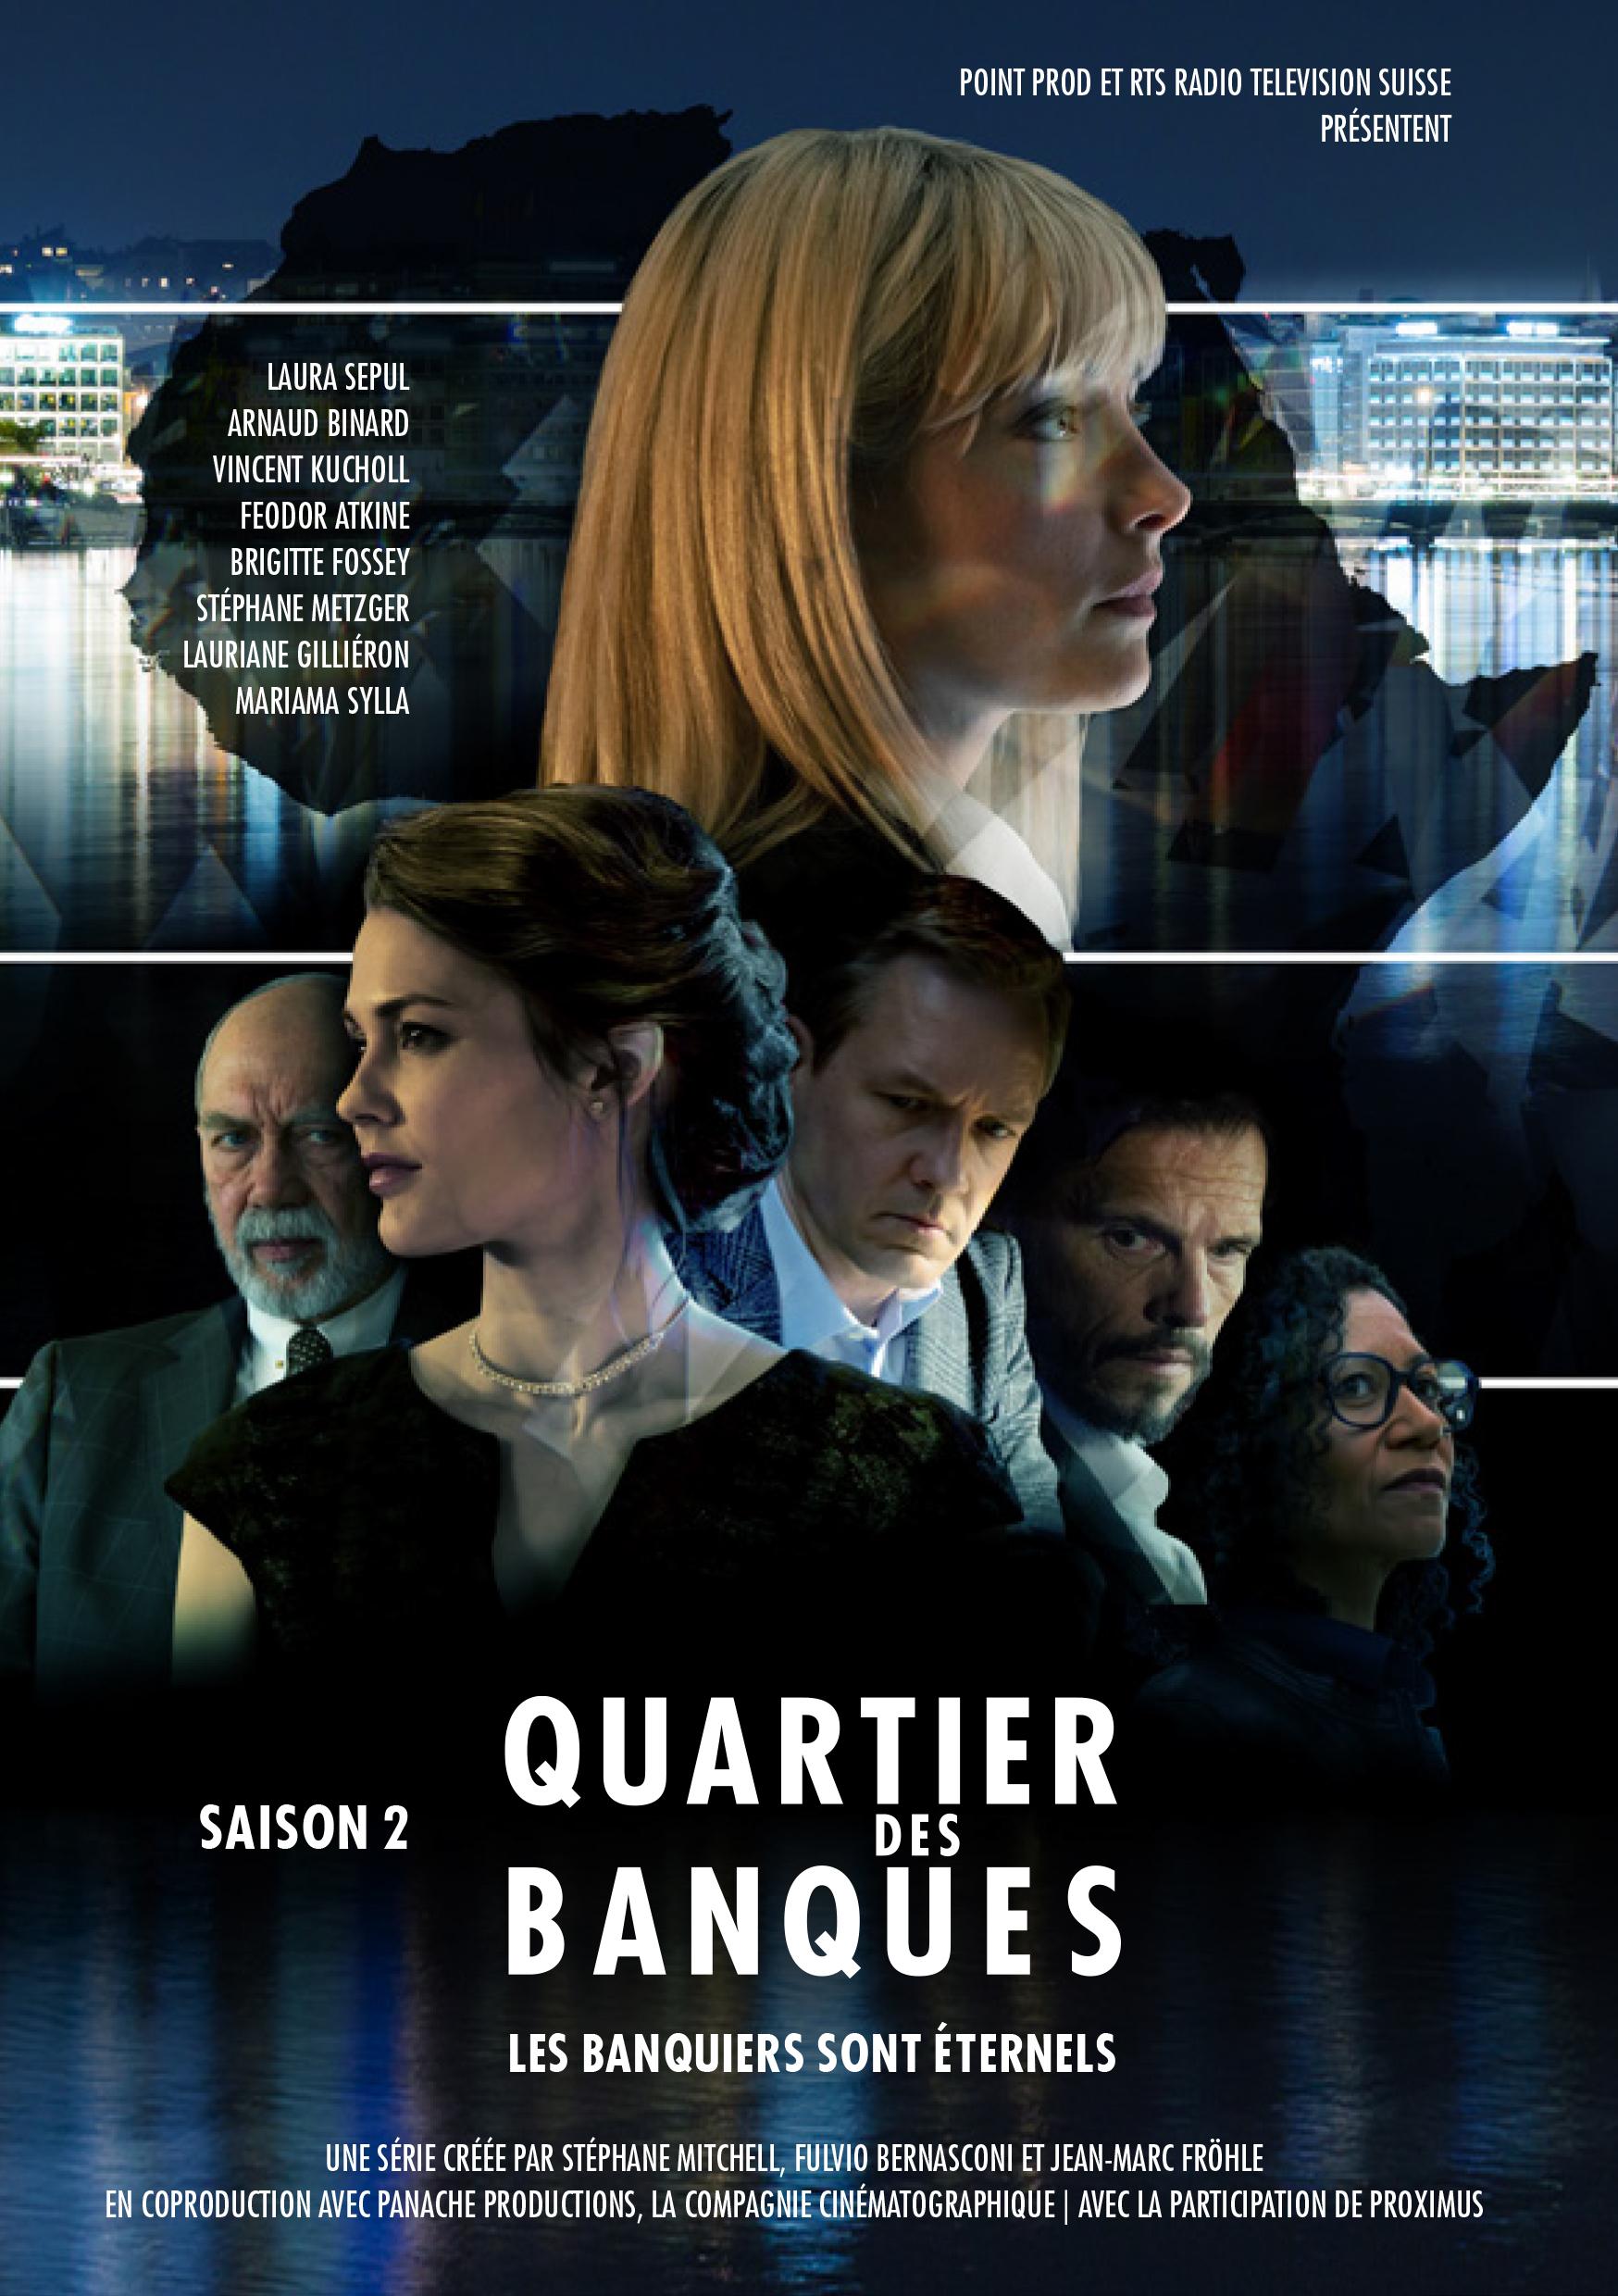 "Quartier des banques", l'affiche de la saison 2 [RTS - Point Prod]